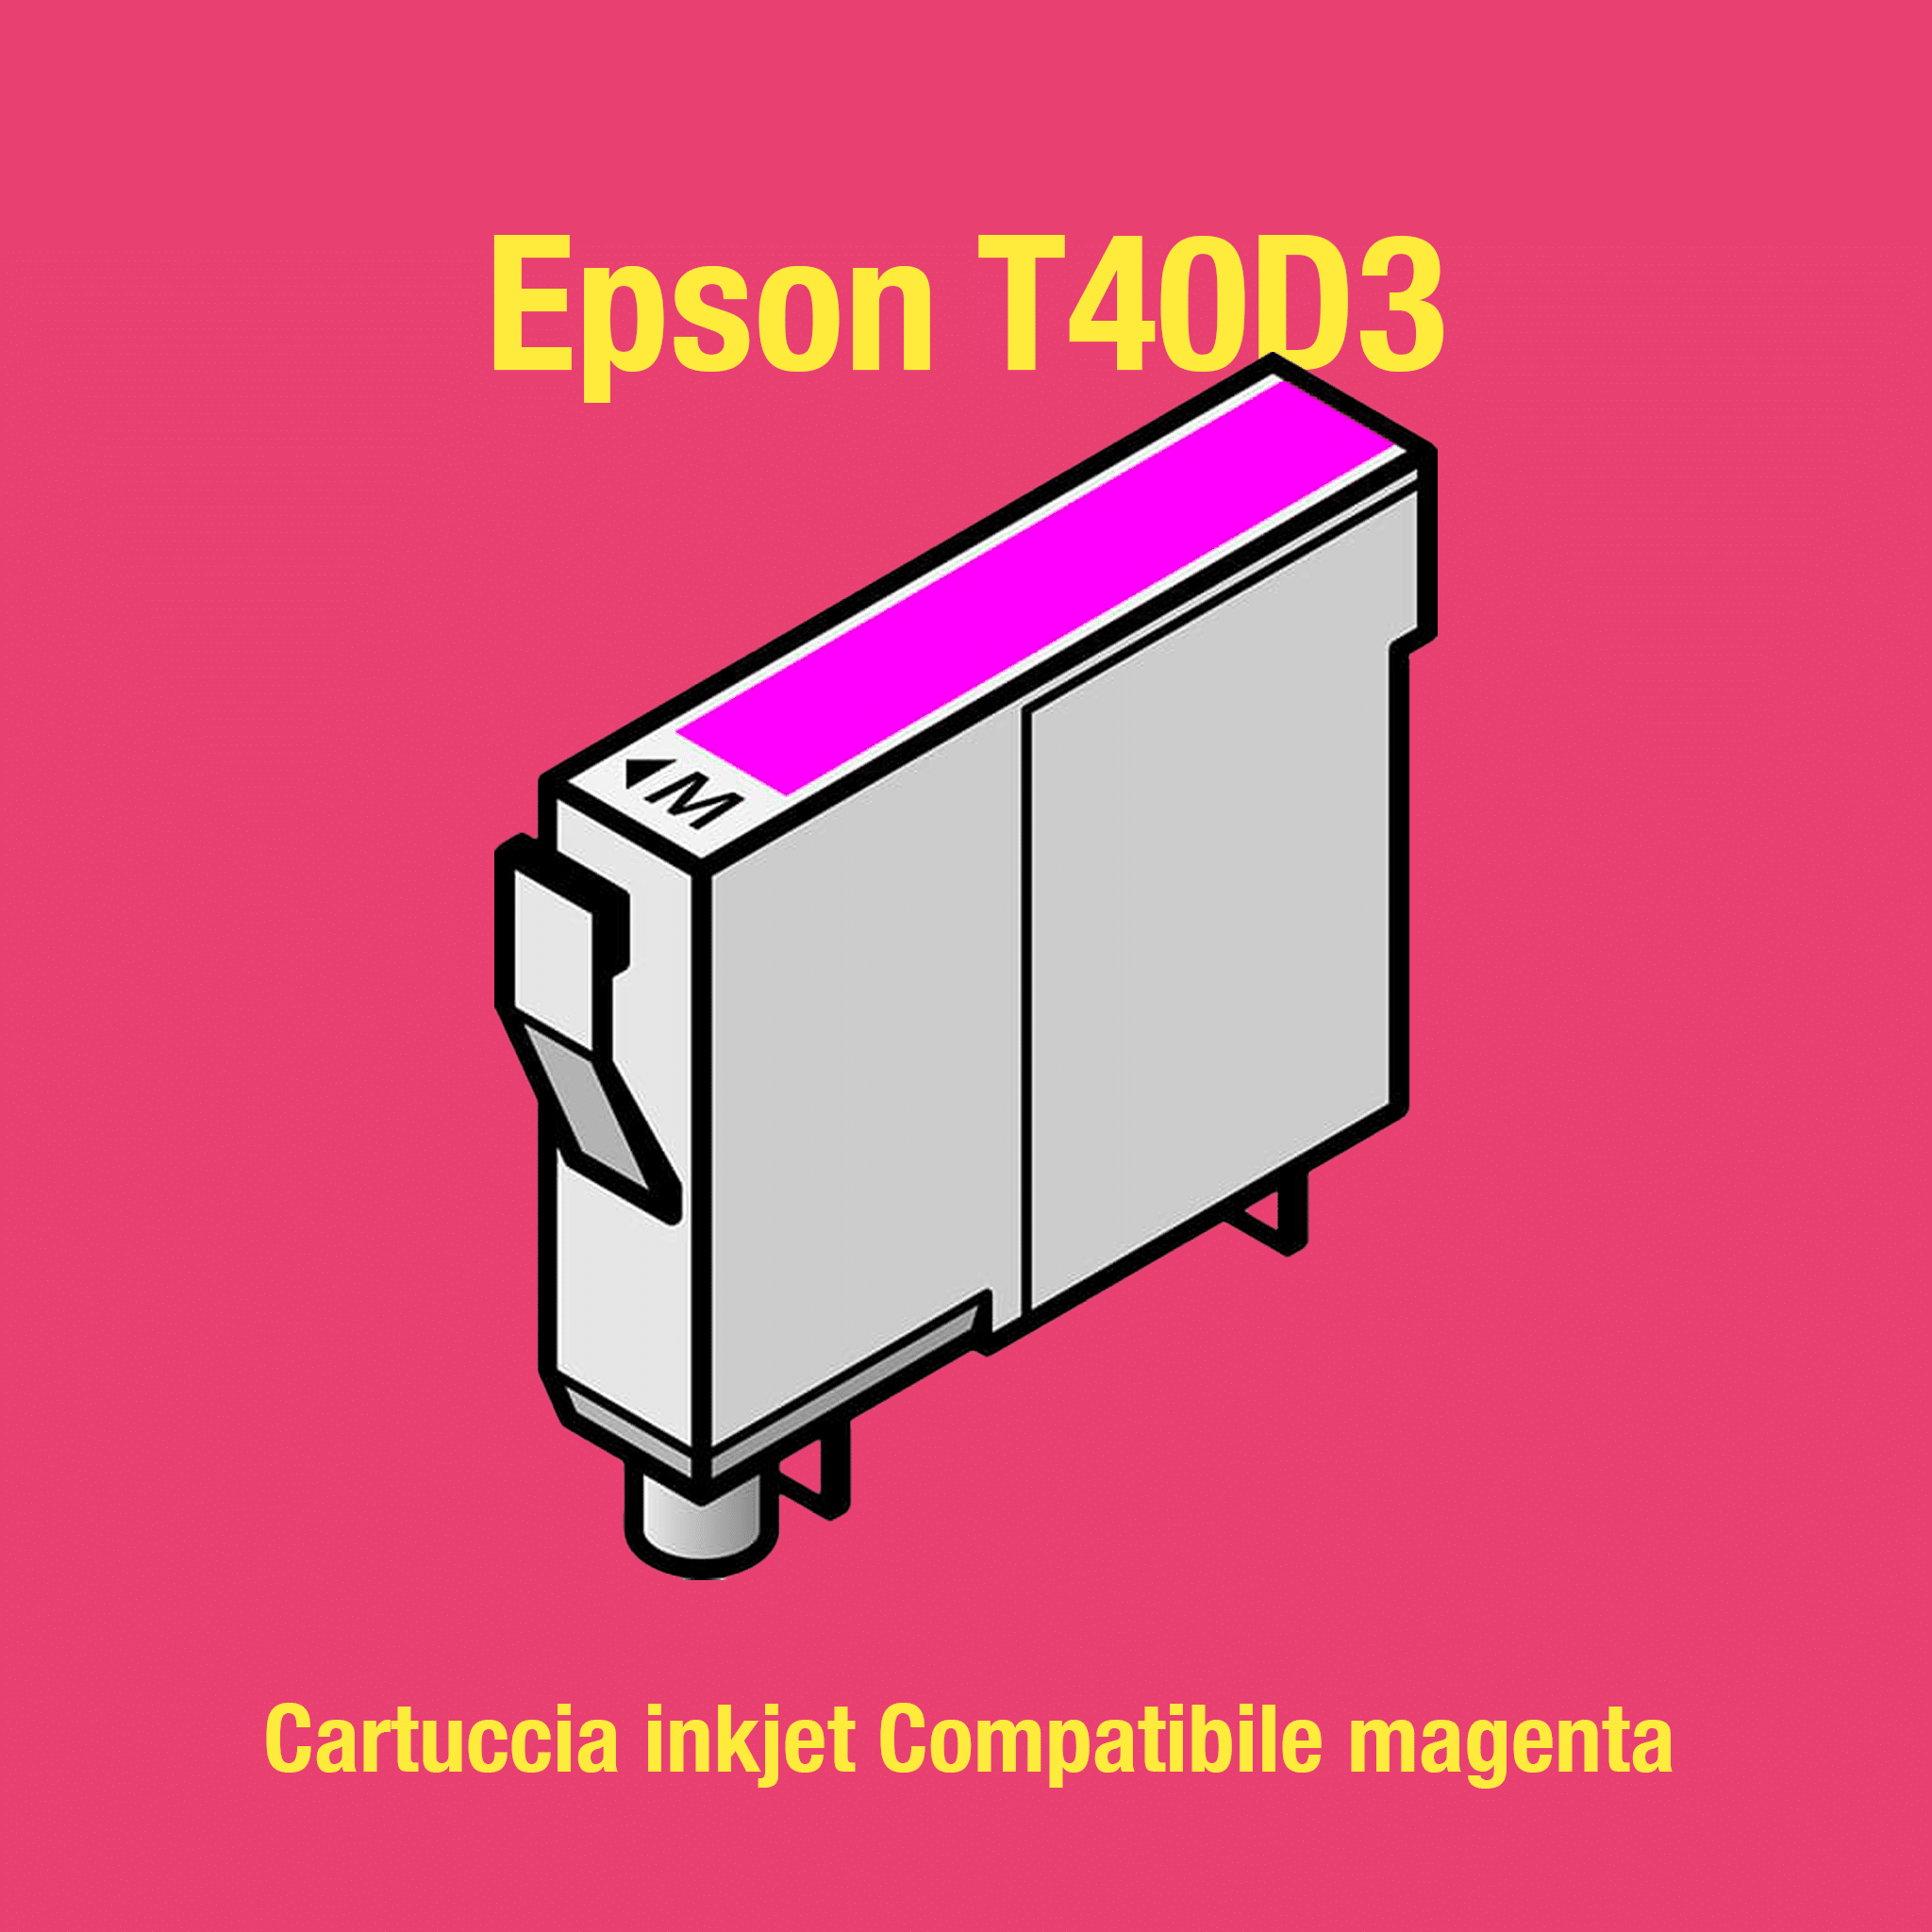 Epson T40D3